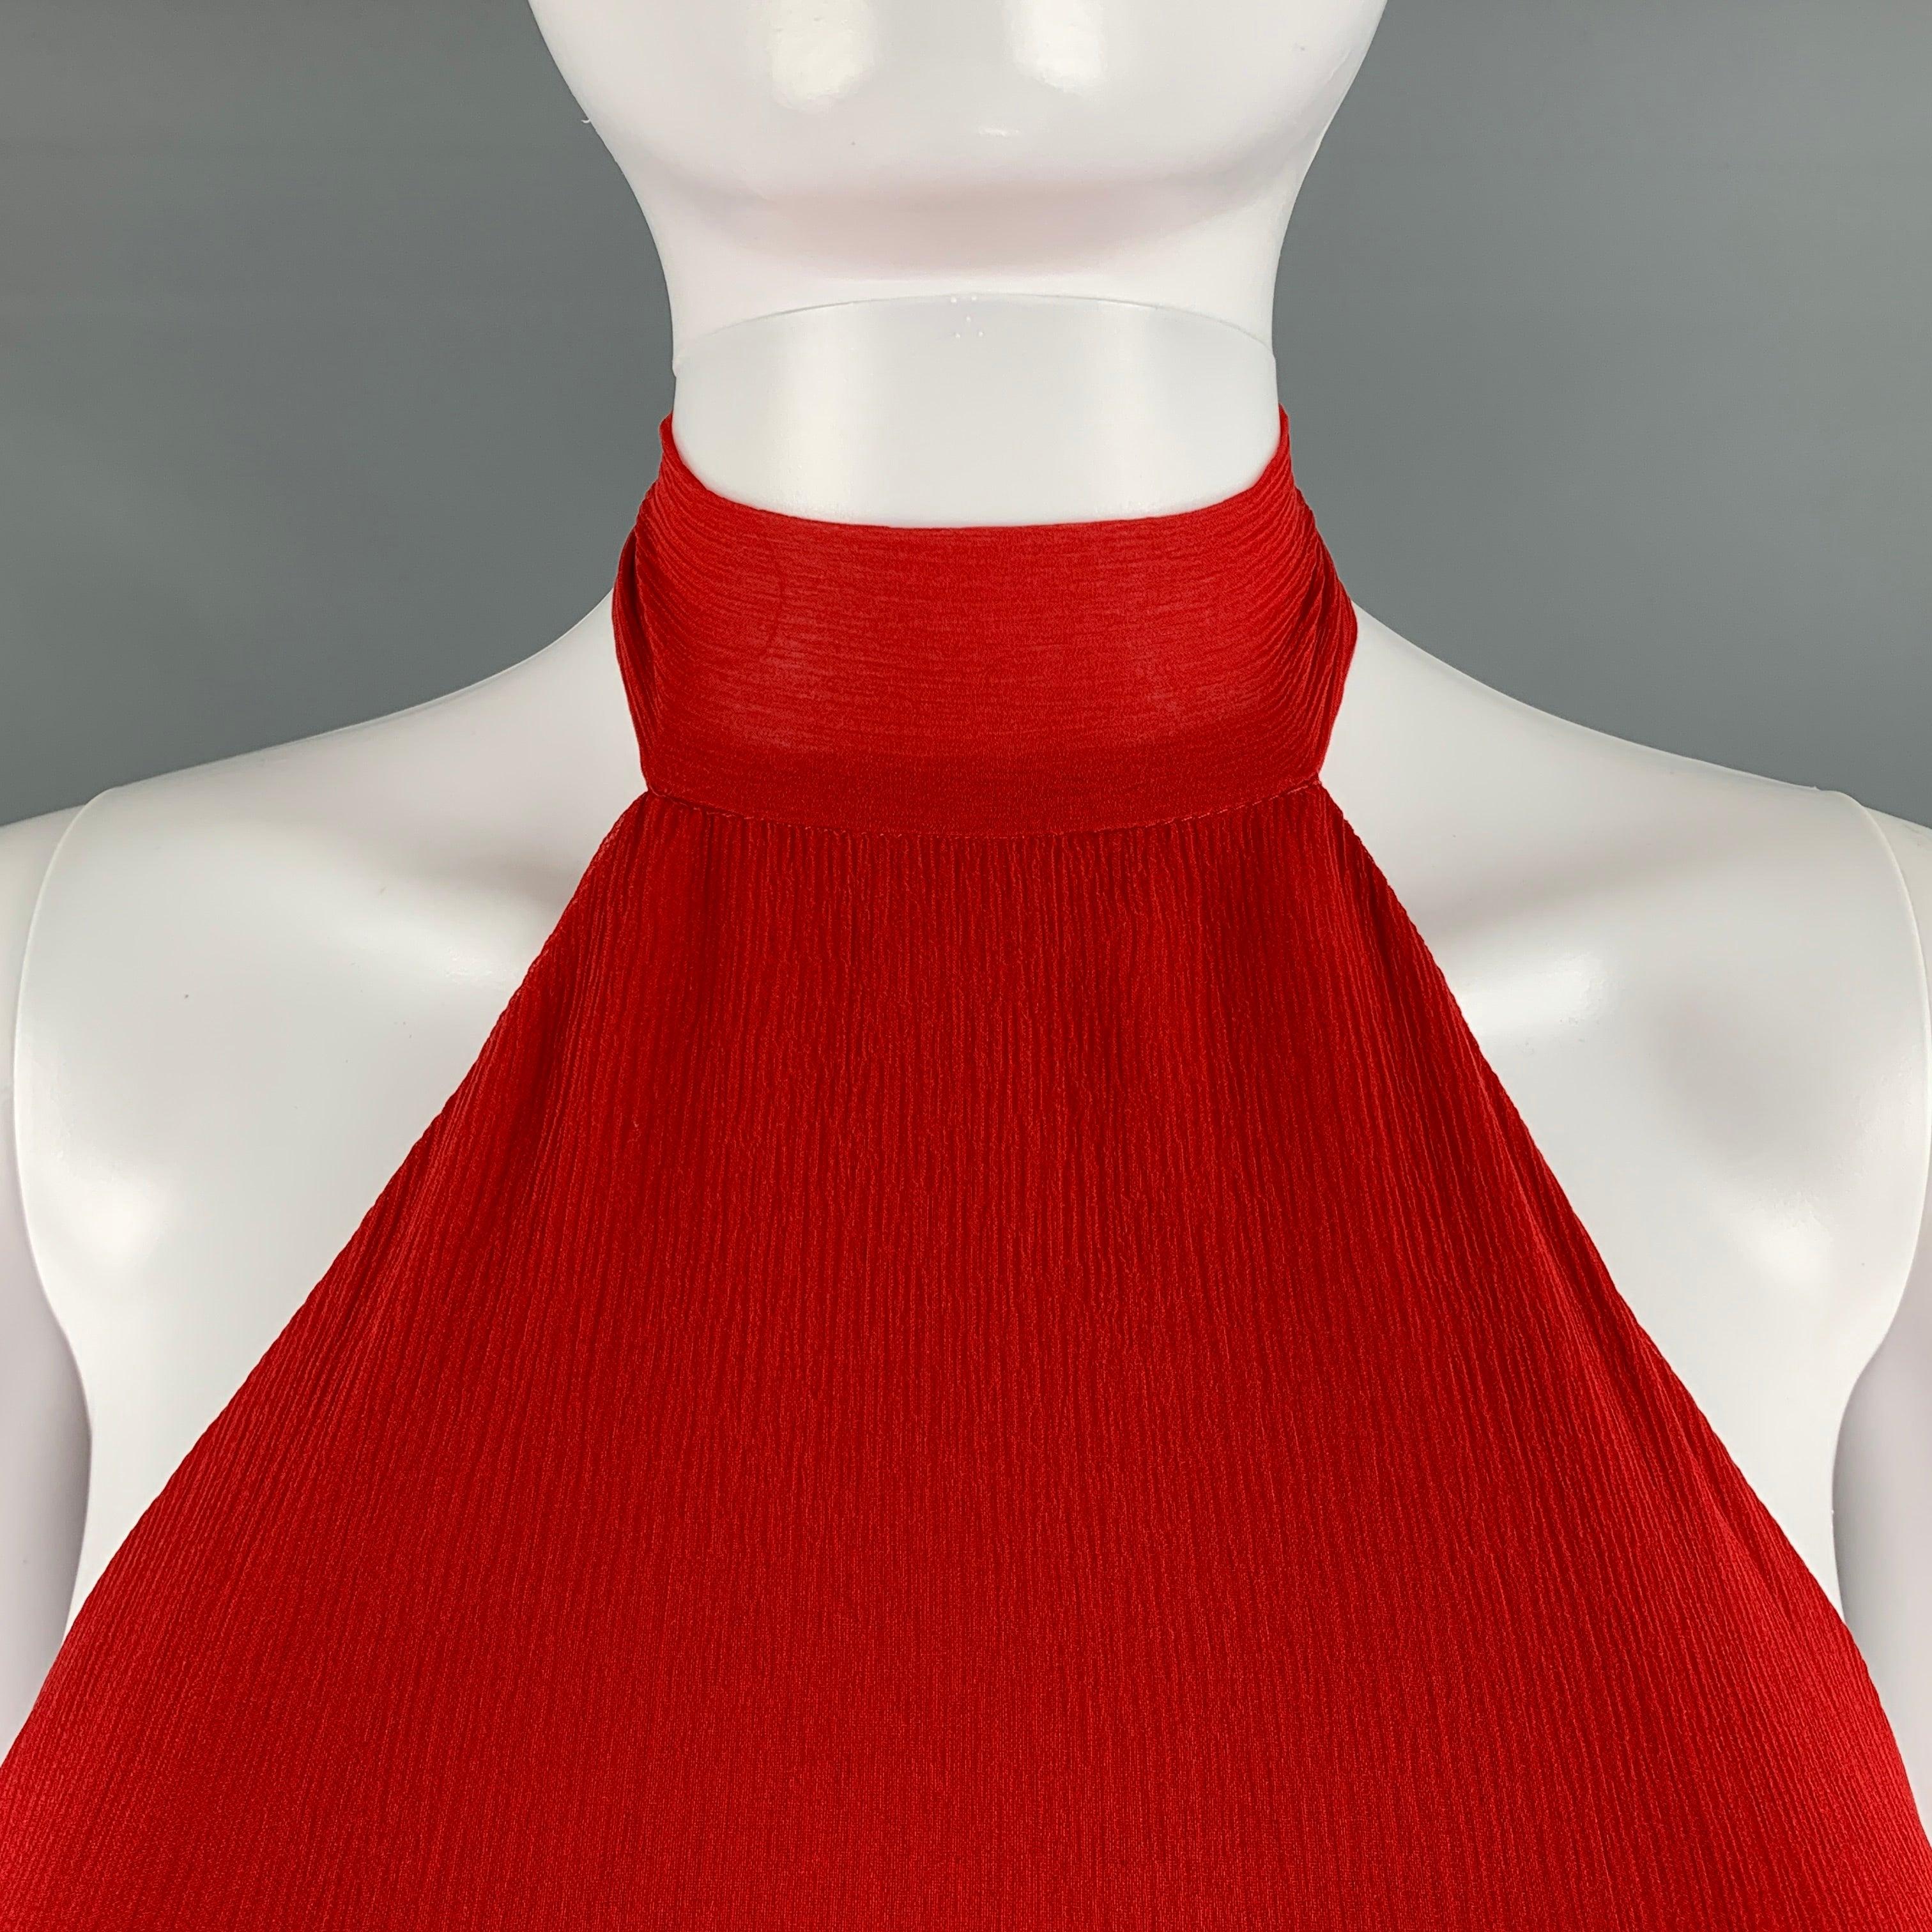 La robe Halston est en mousseline de soie rouge plissée et texturée, avec un dos nu noué. Nouveau avec Tags. 

Marqué :  
10 

Mesures : 
  Buste : 36 pouces Taille : 25 pouces Hanche : 26 pouces Longueur : 60 pouces 
  
  
 
Numéro de référence :